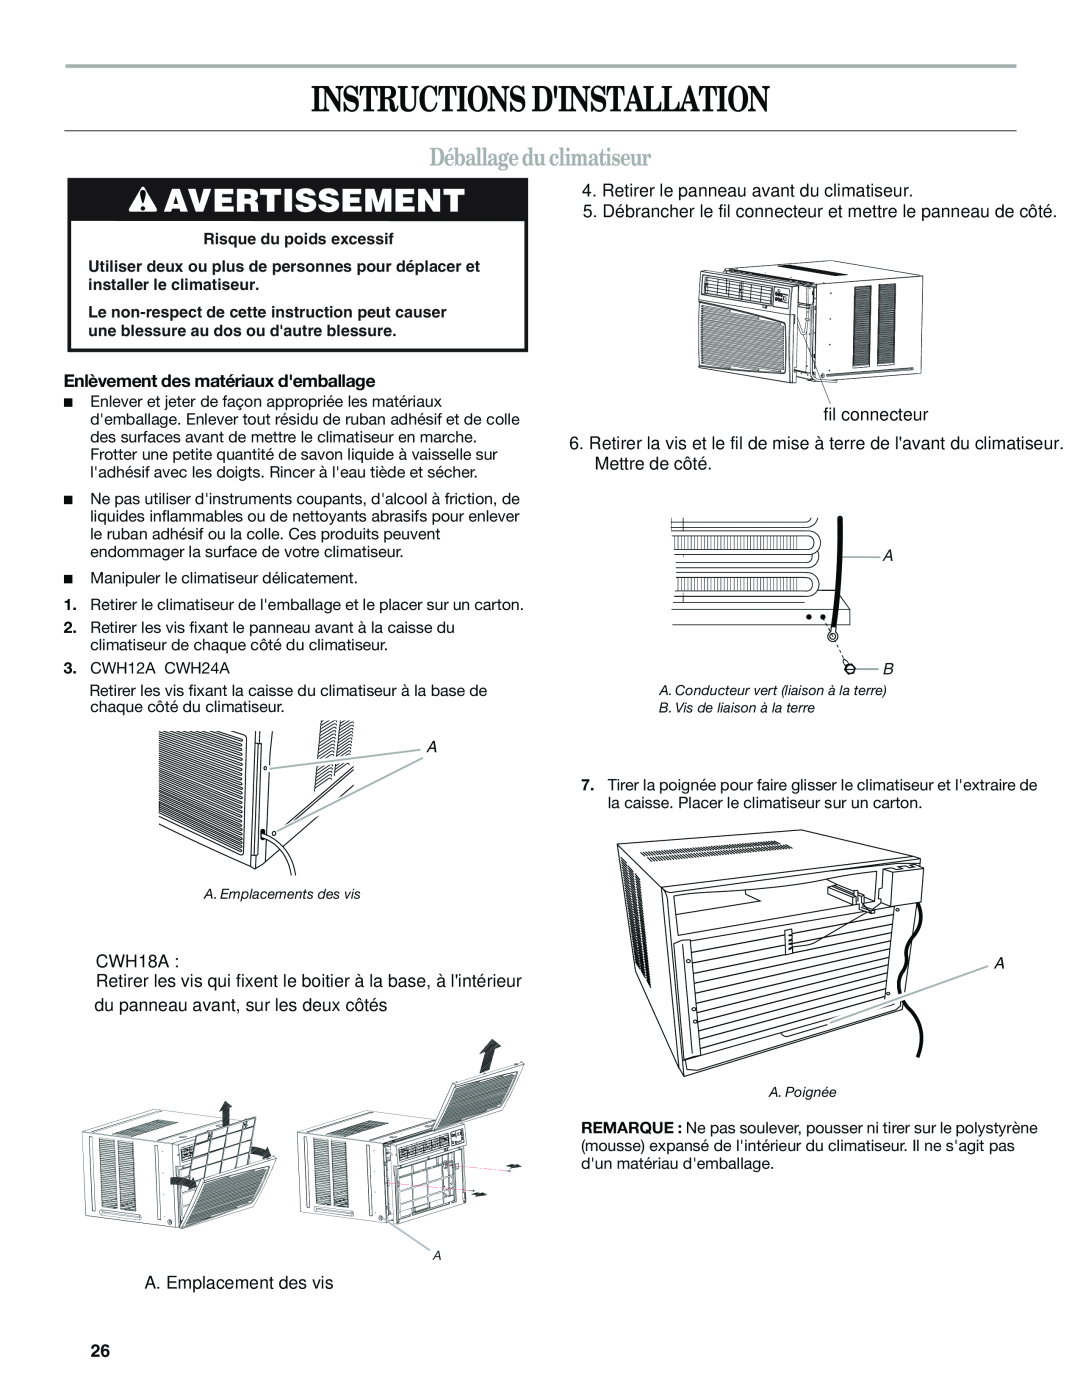 Haier CWH12A Instructions Dinstallation, Déballage du climatiseur, Avertissement, Enlèvement des matériaux demballage 